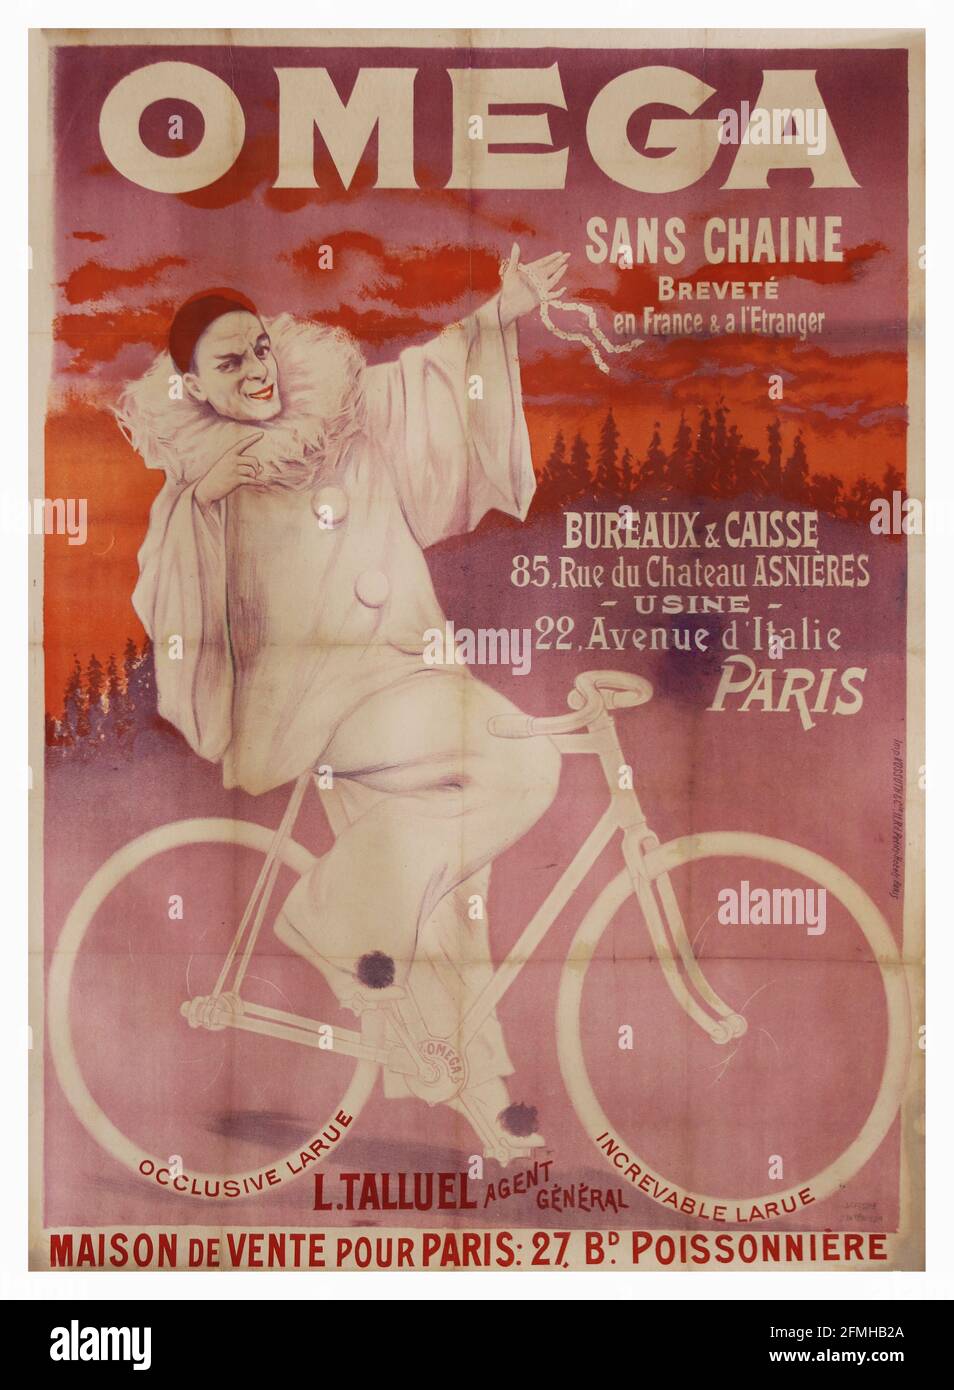 Omega - Sans Chaine. Uffici e Caisse. 22 Avenue d'Italie Parigi. Poster della pubblicità sulla bicicletta. Vecchio e vintage. Ottimizzato digitalmente. Foto Stock